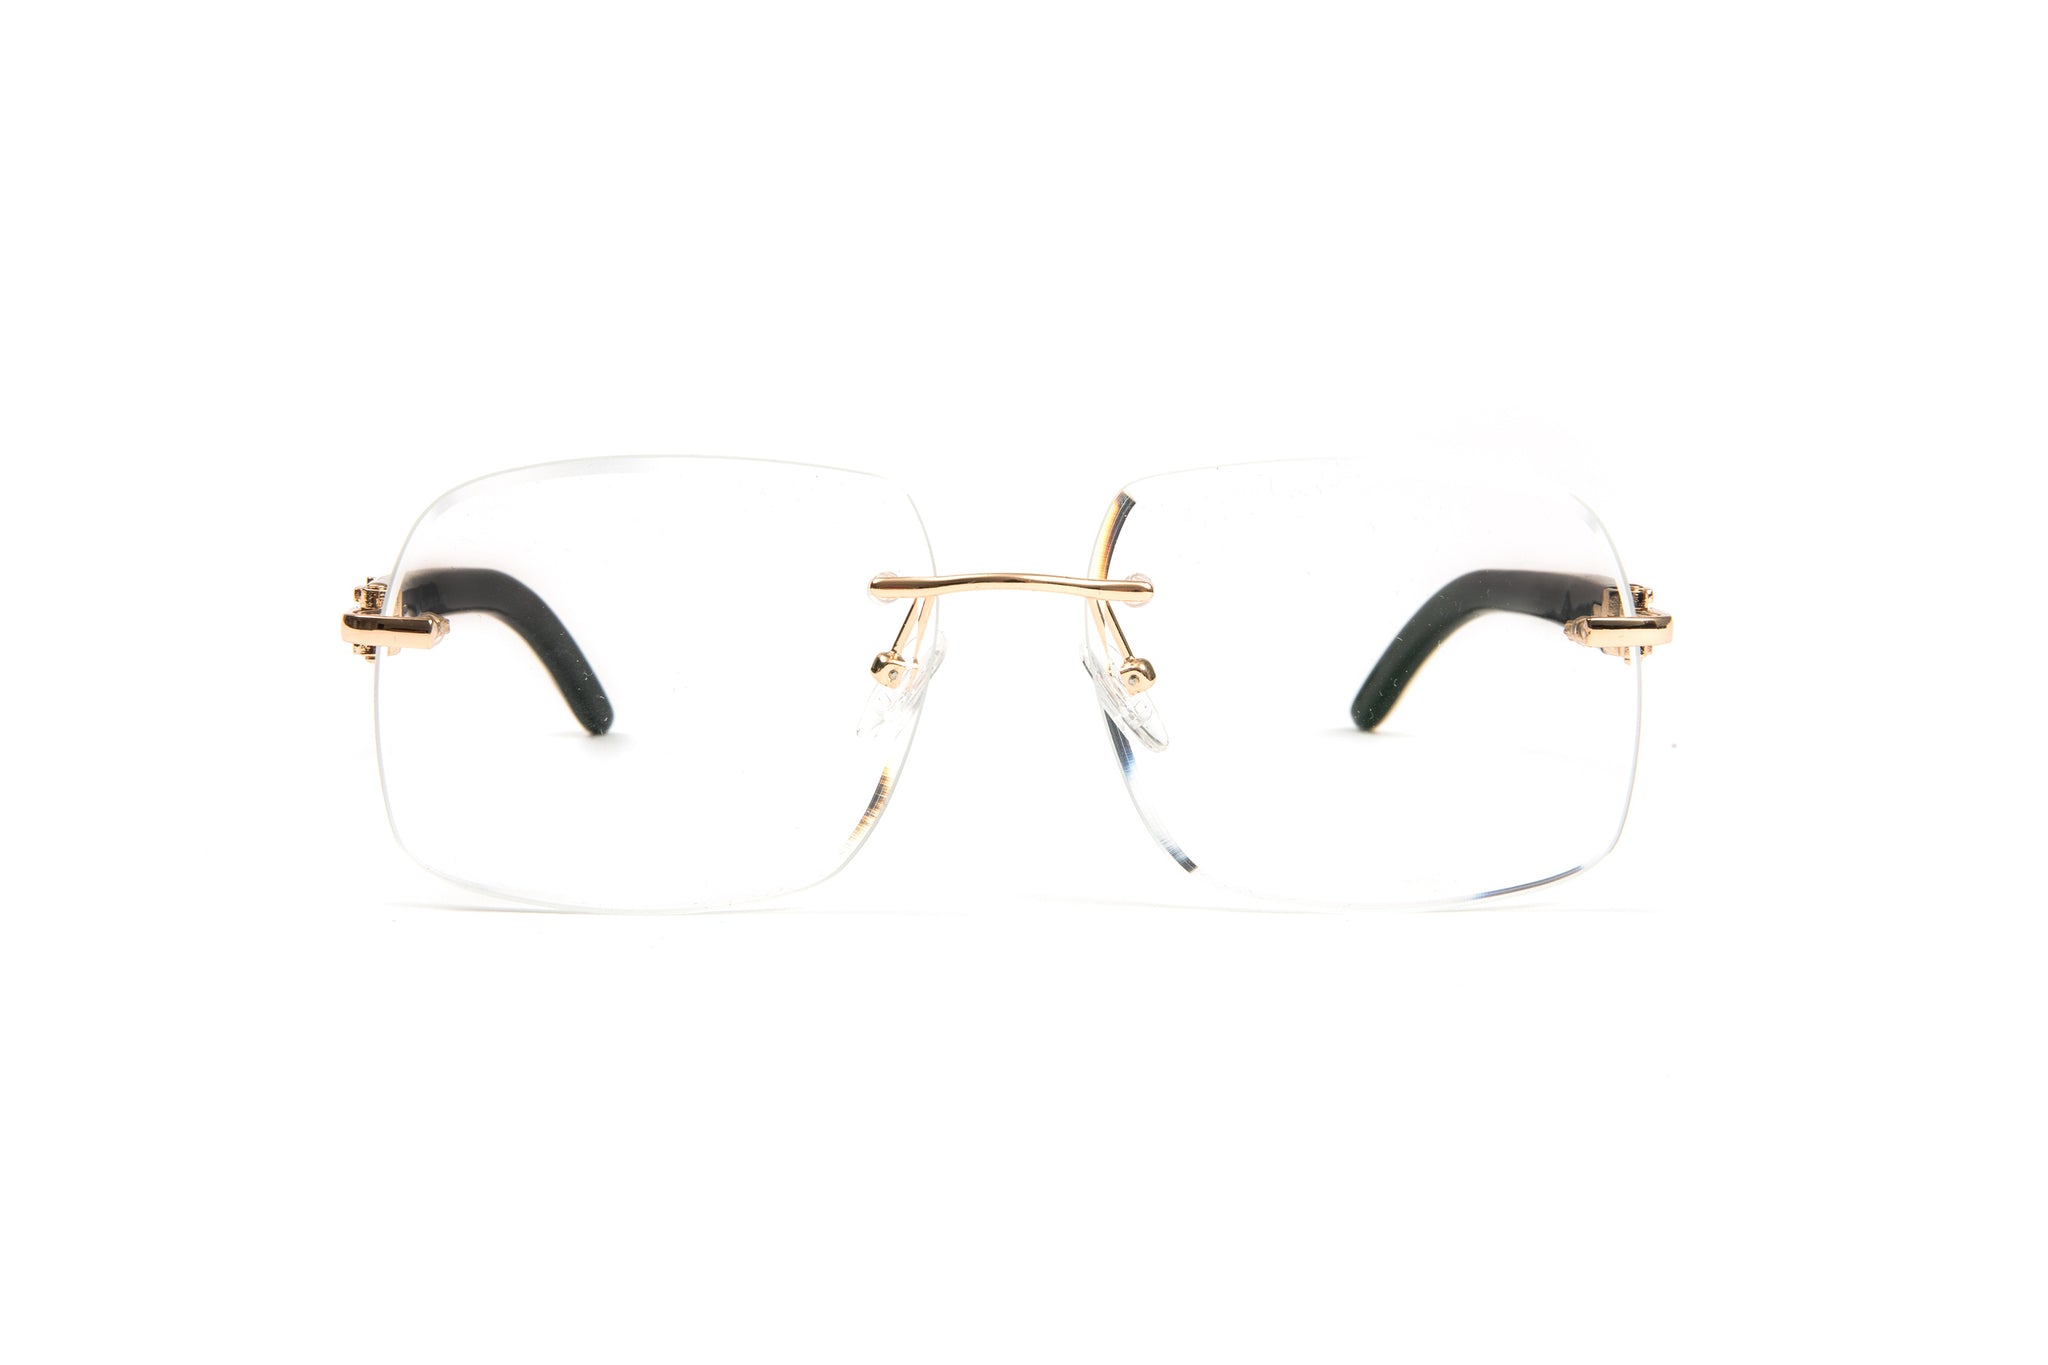 VWC White Buffalo Horn Eyeglasses, 18KT Gold-Plated Frames, Clear Lenses